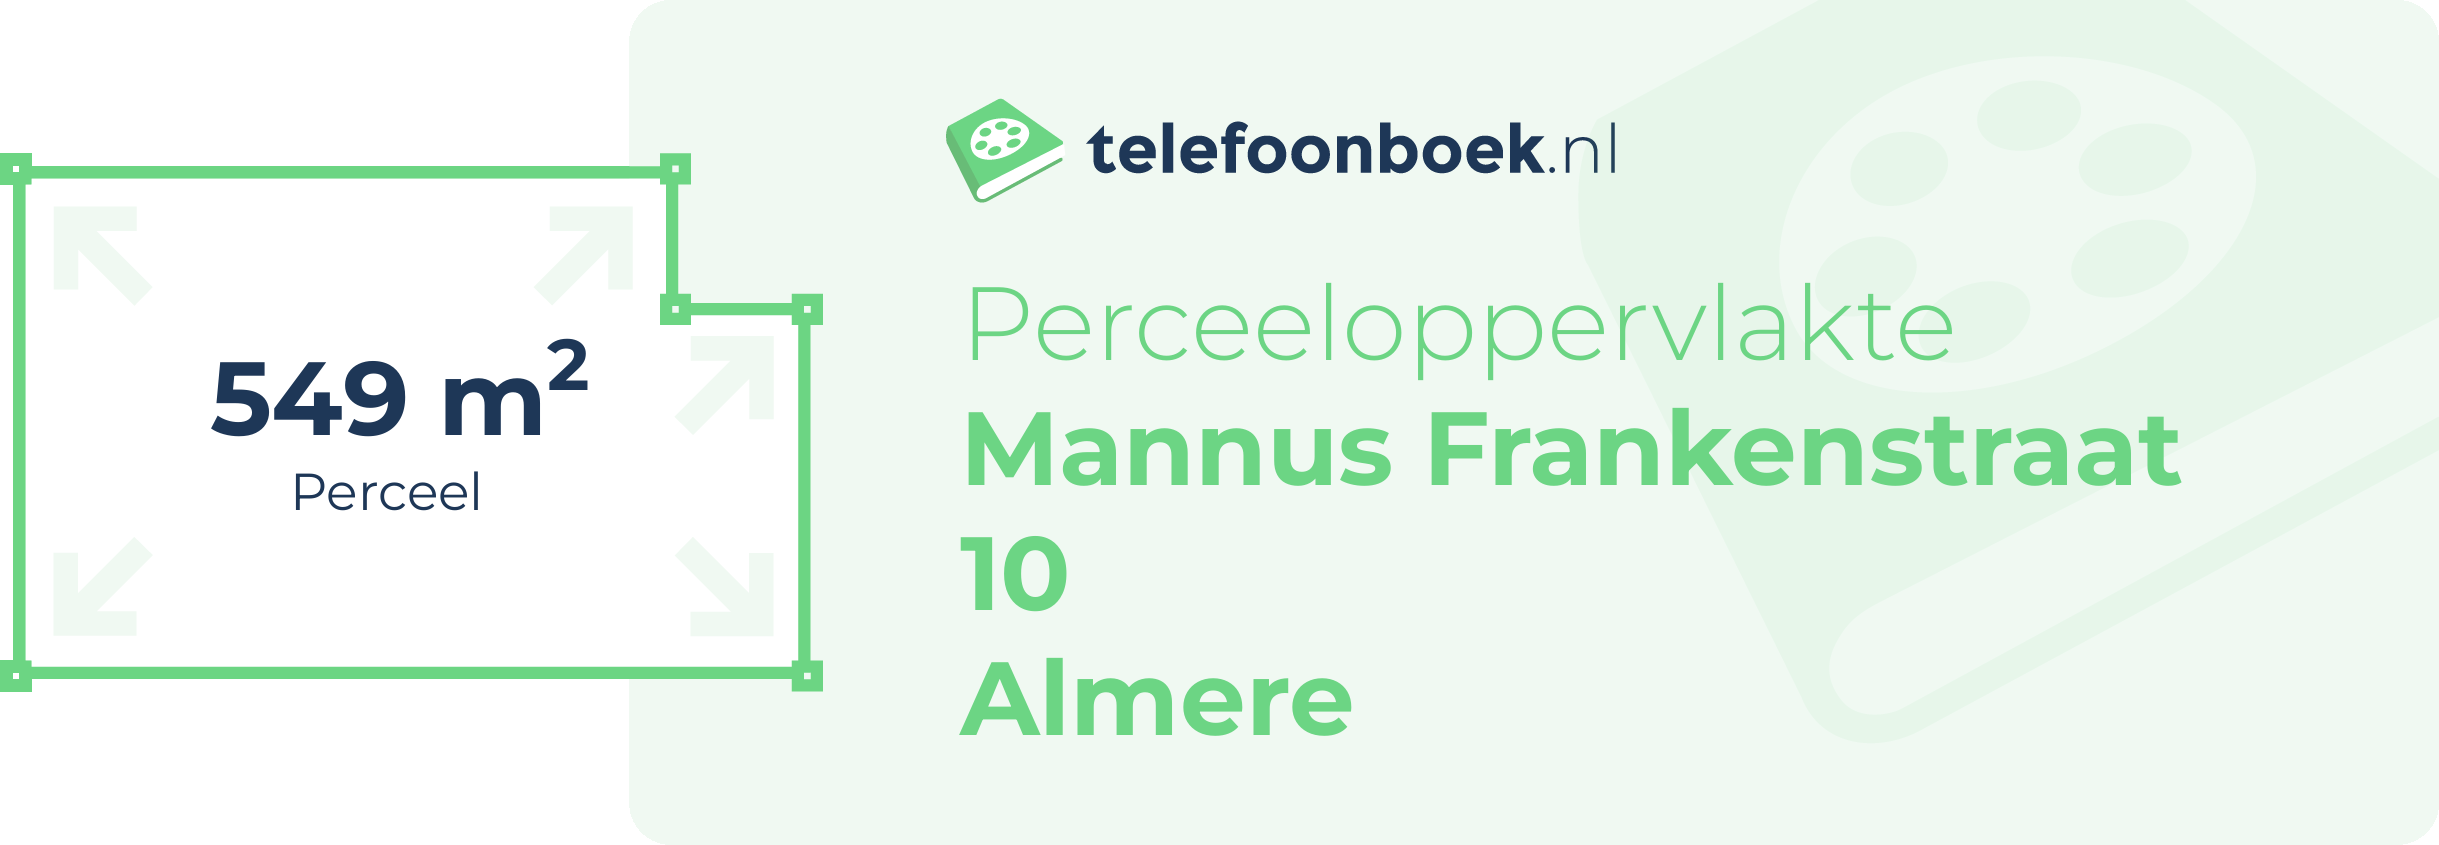 Perceeloppervlakte Mannus Frankenstraat 10 Almere